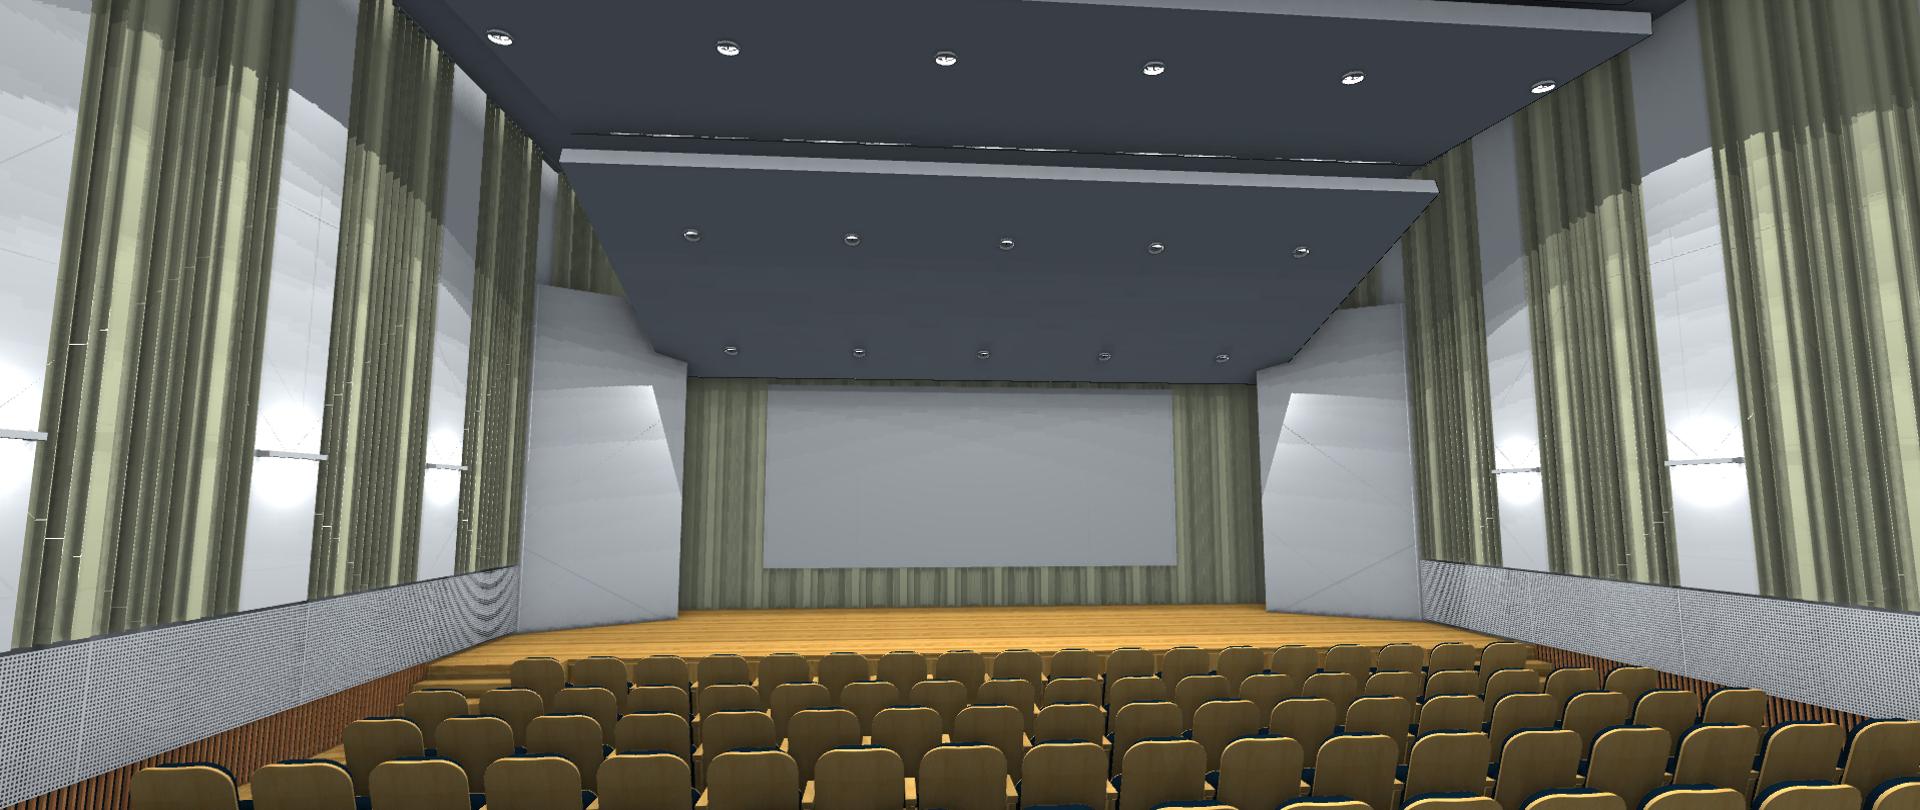 Na zdjęciu sala koncertowa z fotelami, podwieszanym sufitem i panelami akustycznymi na ścianach.